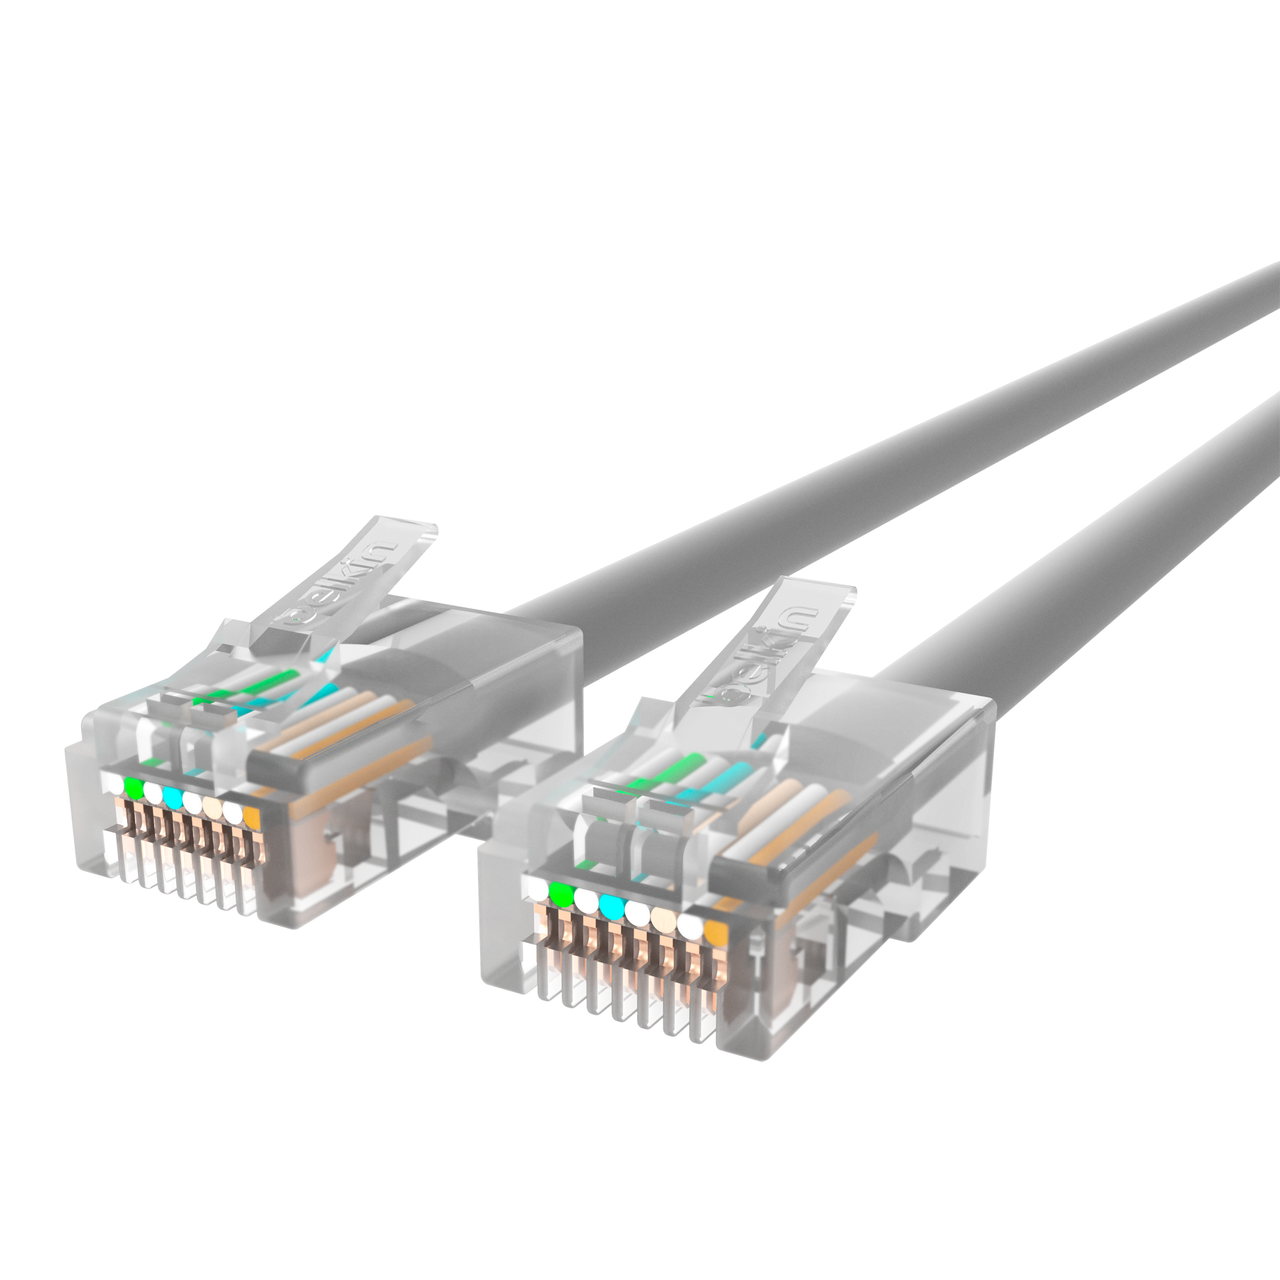 Belkin belkin cat5e networking cable x3 